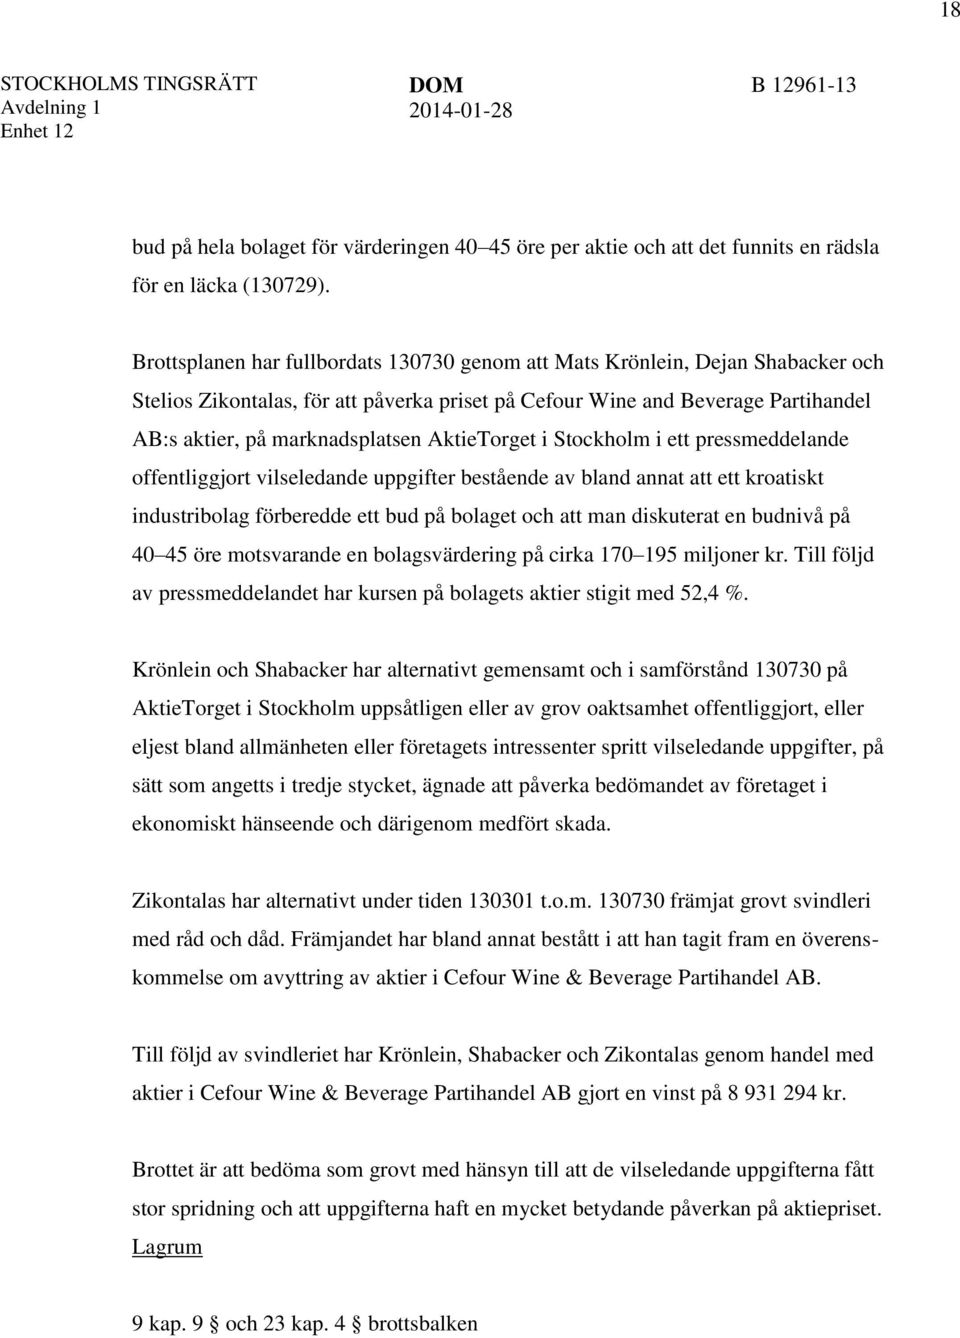 AktieTorget i Stockholm i ett pressmeddelande offentliggjort vilseledande uppgifter bestående av bland annat att ett kroatiskt industribolag förberedde ett bud på bolaget och att man diskuterat en